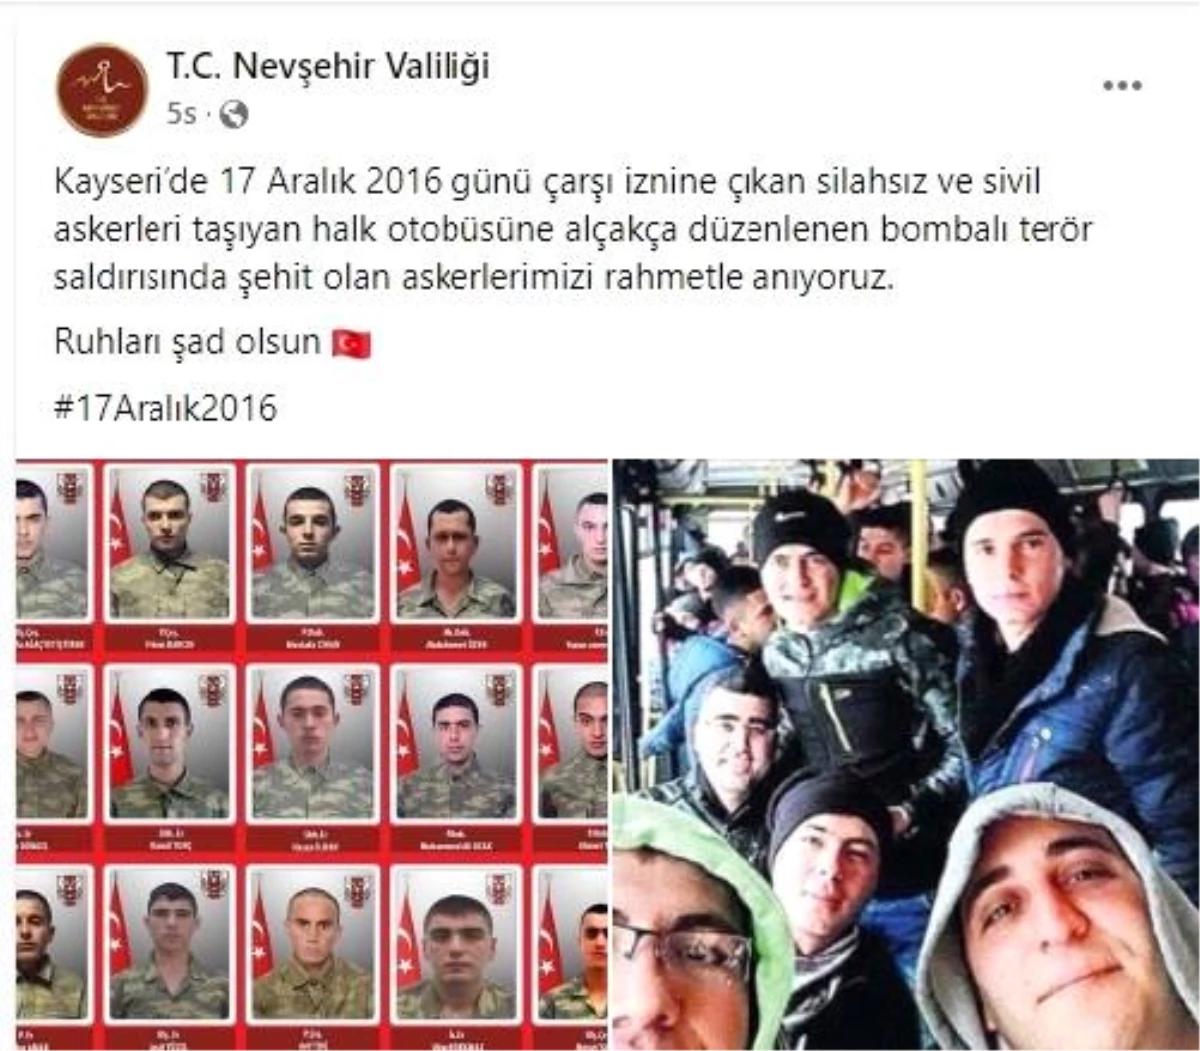 Nevşehir Valiliği: "Şehitlerimizi rahmetle anıyoruz"